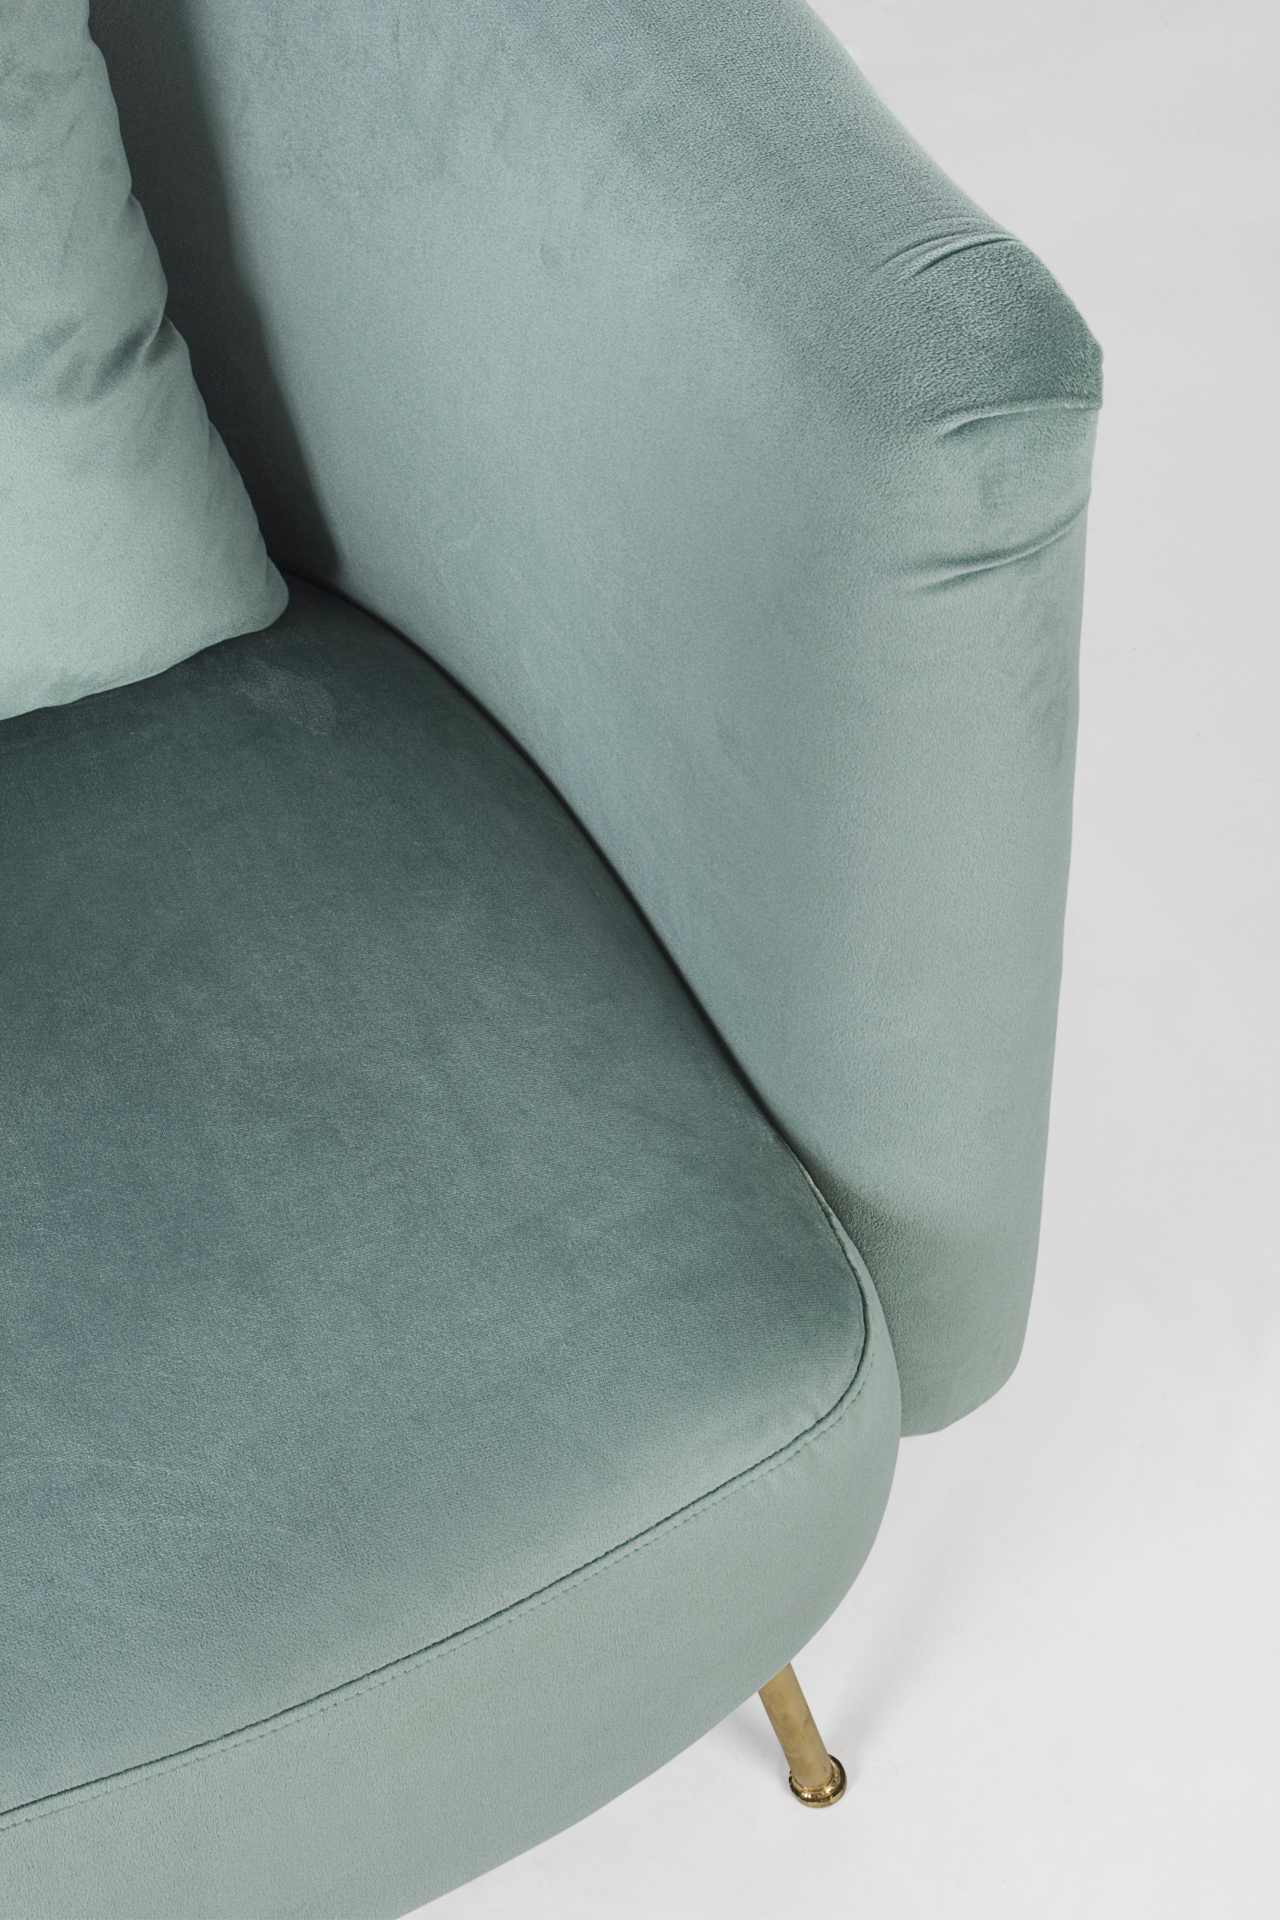 Der Sessel Tenbury überzeugt mit seinem modernen Design. Gefertigt wurde er aus Stoff in Samt-Optik, welcher einen türkis Farbton besitzt. Das Gestell ist aus Metall und hat eine goldene Farbe. Der Sessel besitzt eine Sitzhöhe von 42 cm. Die Breite beträg